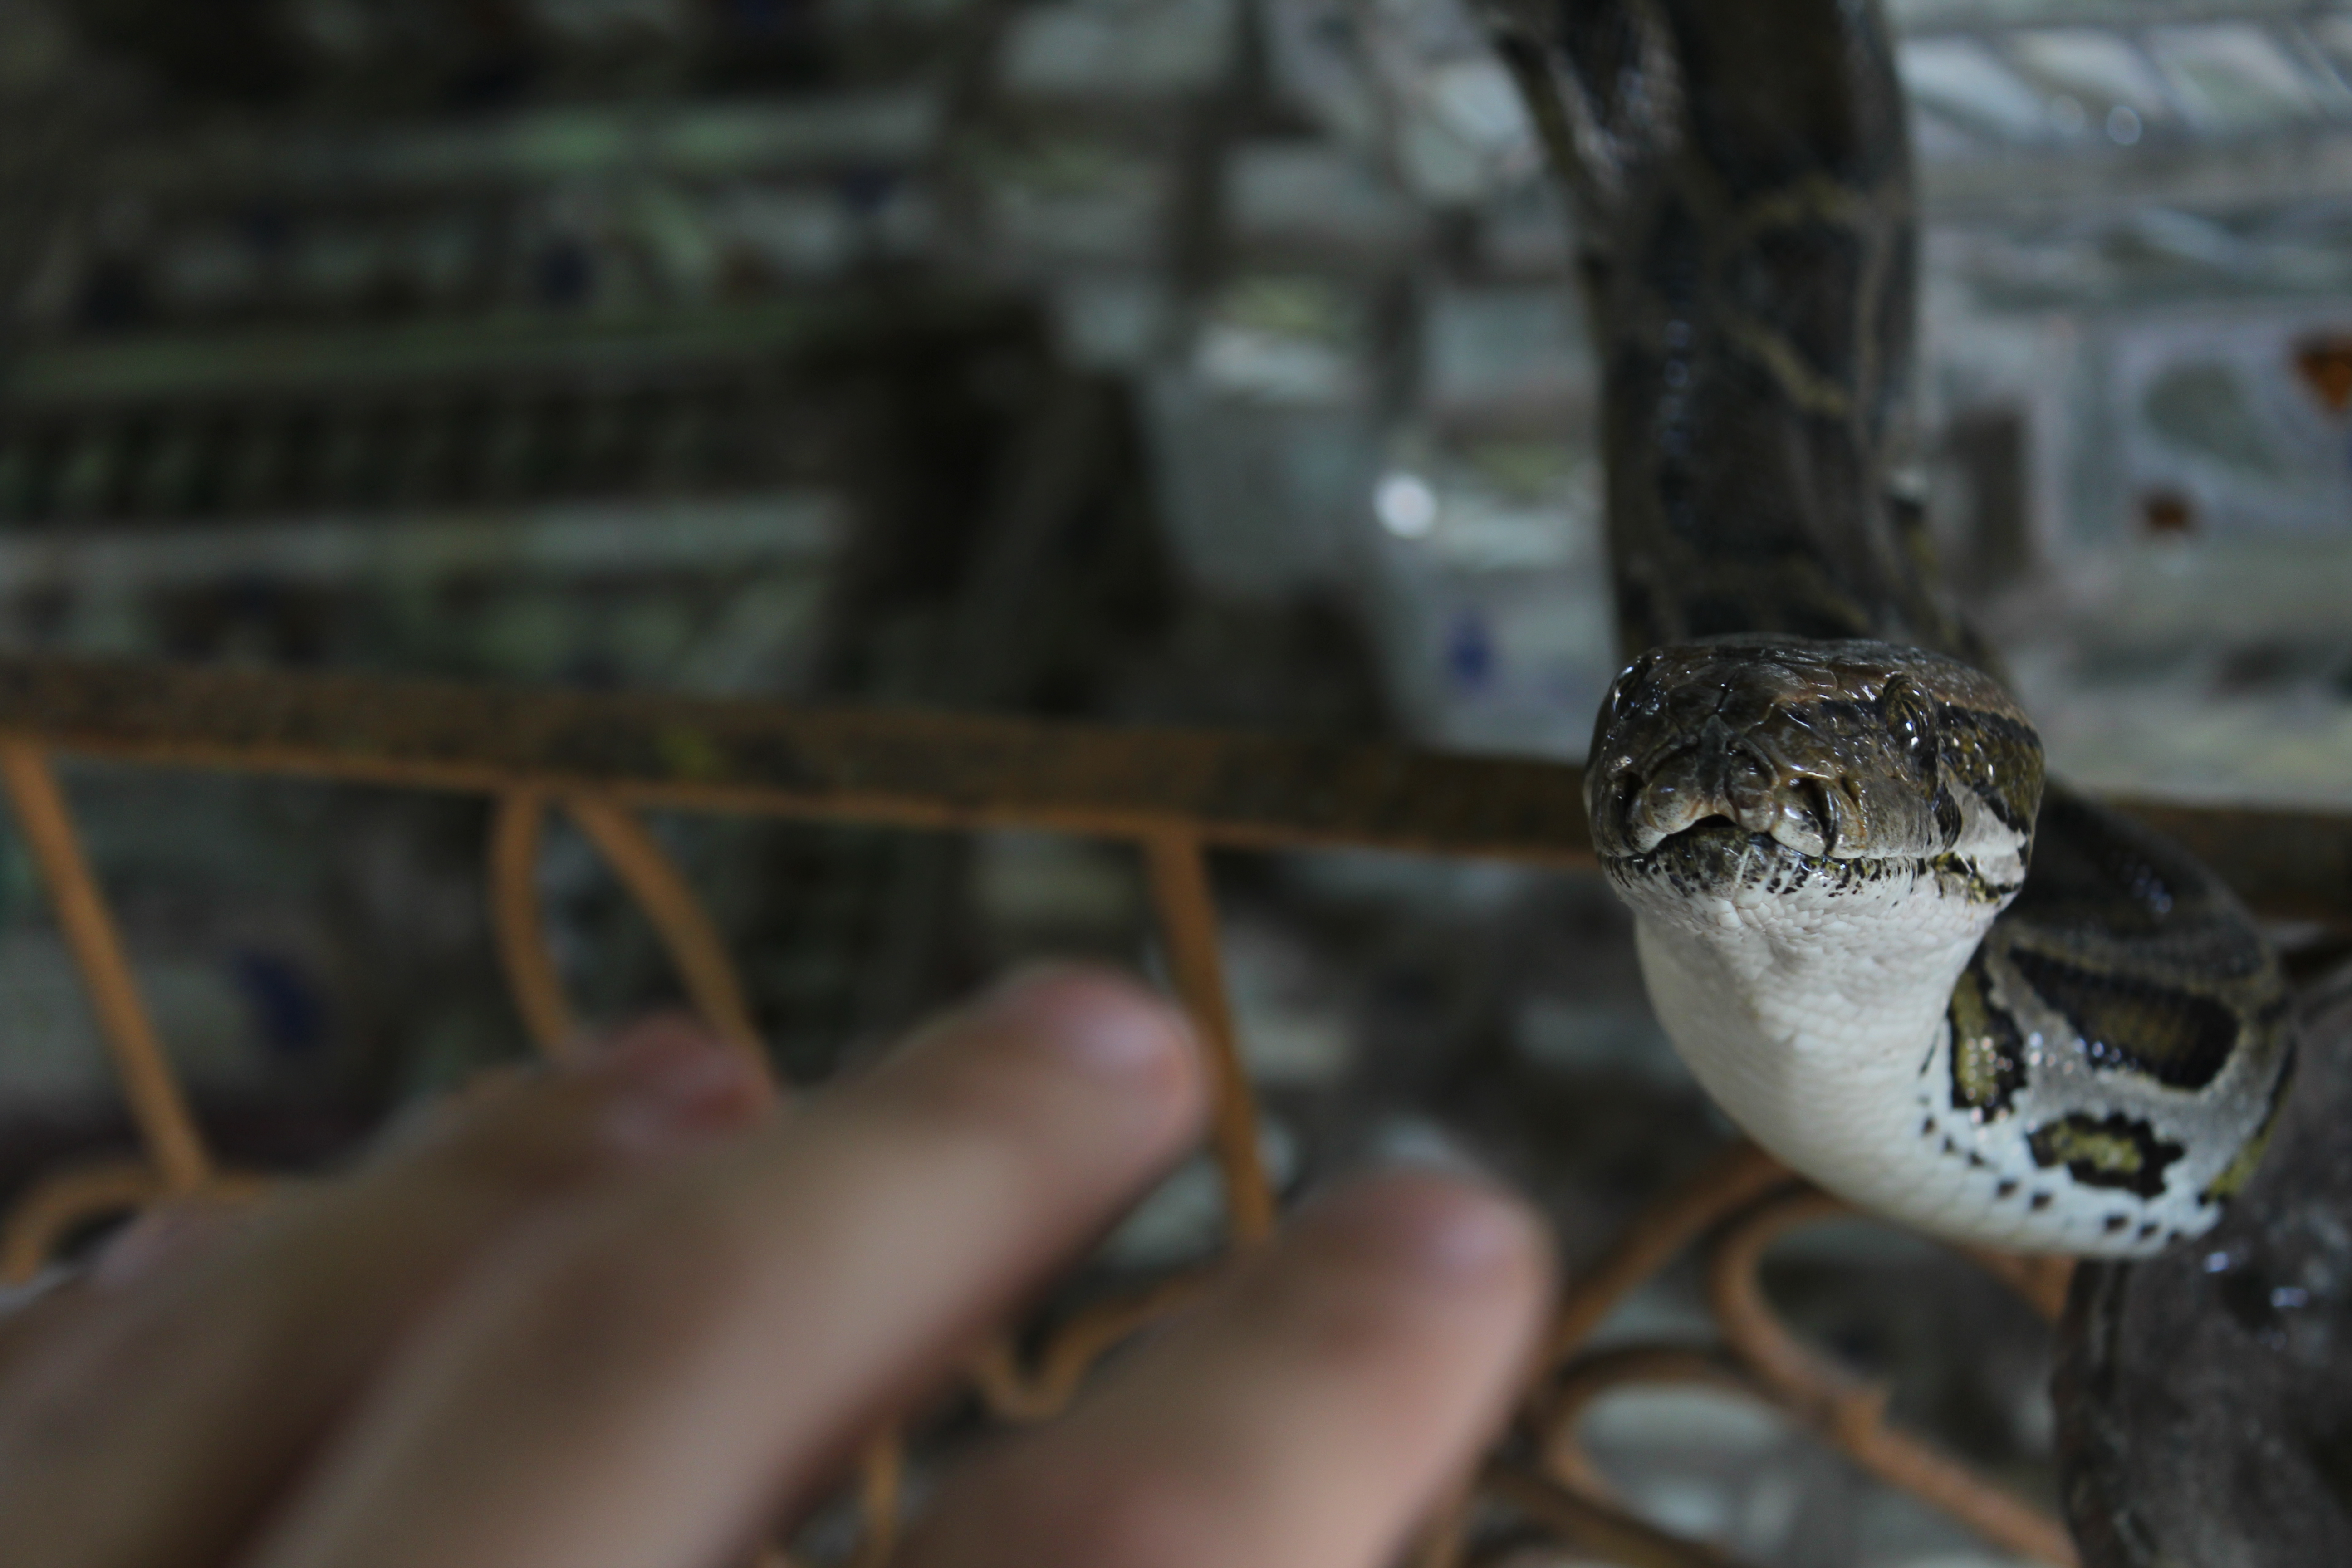 I like touching snakes. Photo: Jacob Goldberg